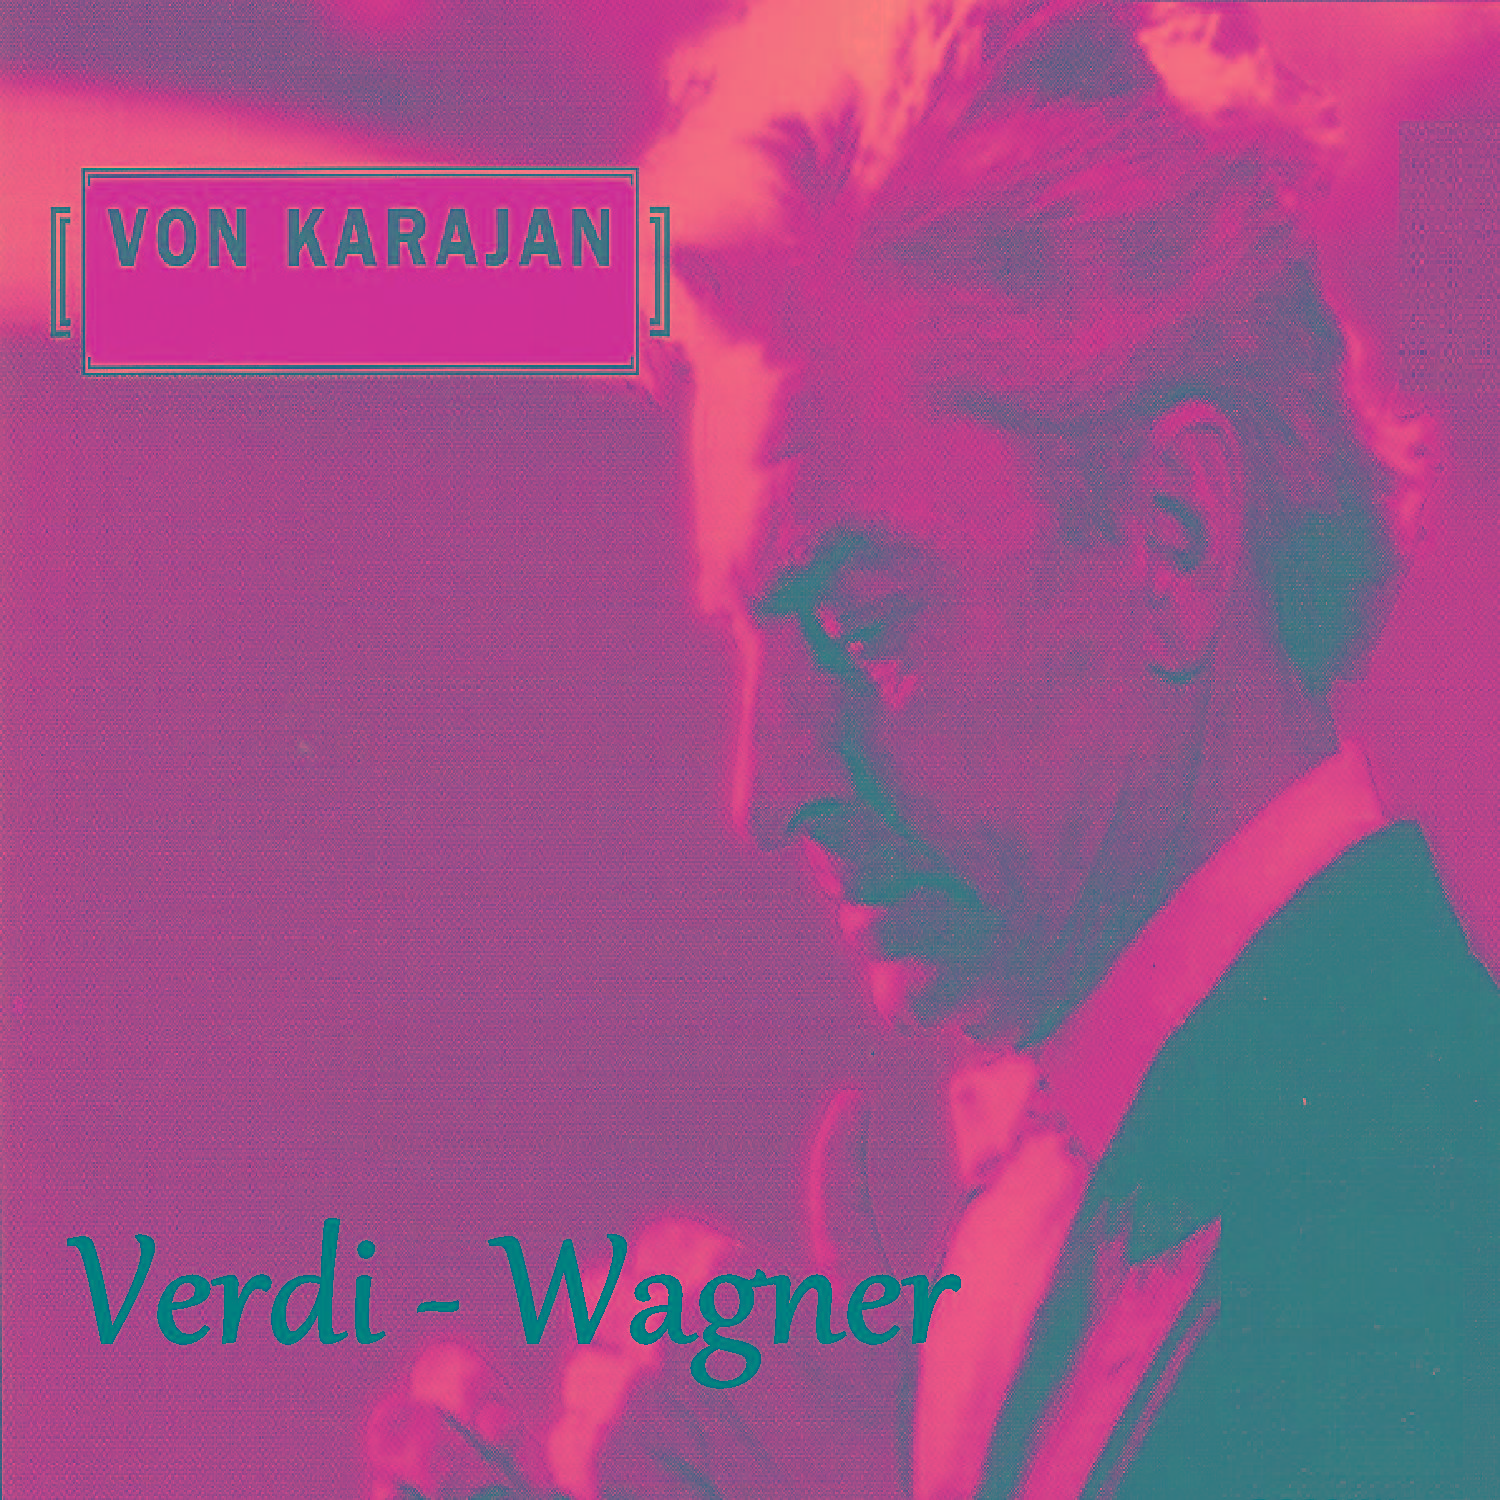 Von Karajan - Verdi - Wagner